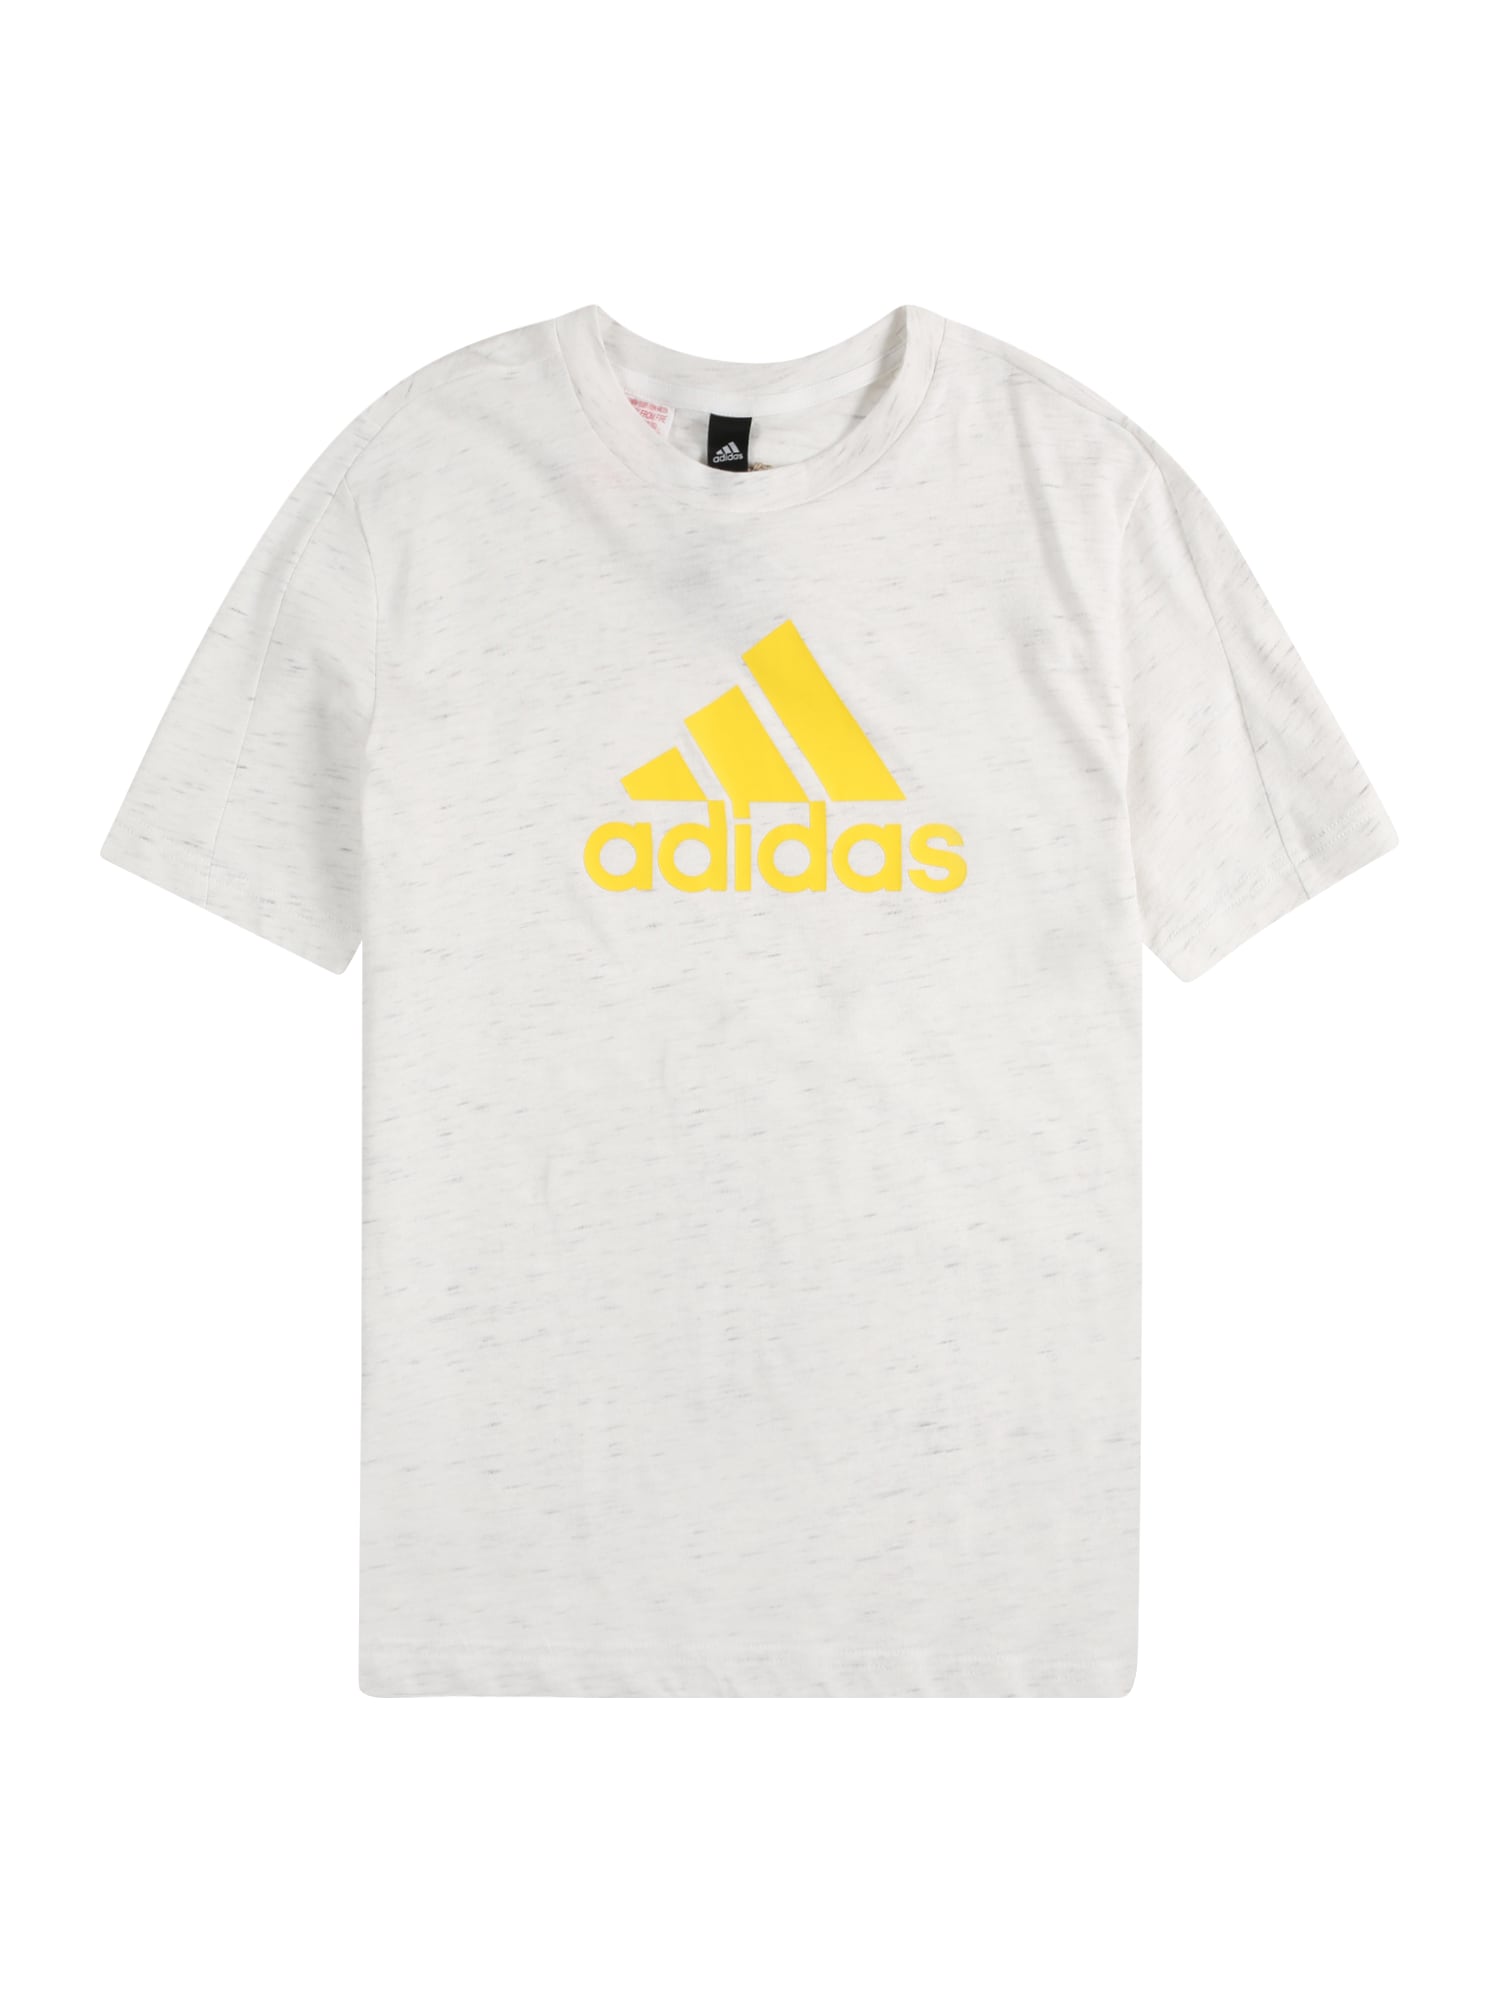 ADIDAS PERFORMANCE Sporta krekls tumši dzeltens / raibi balts